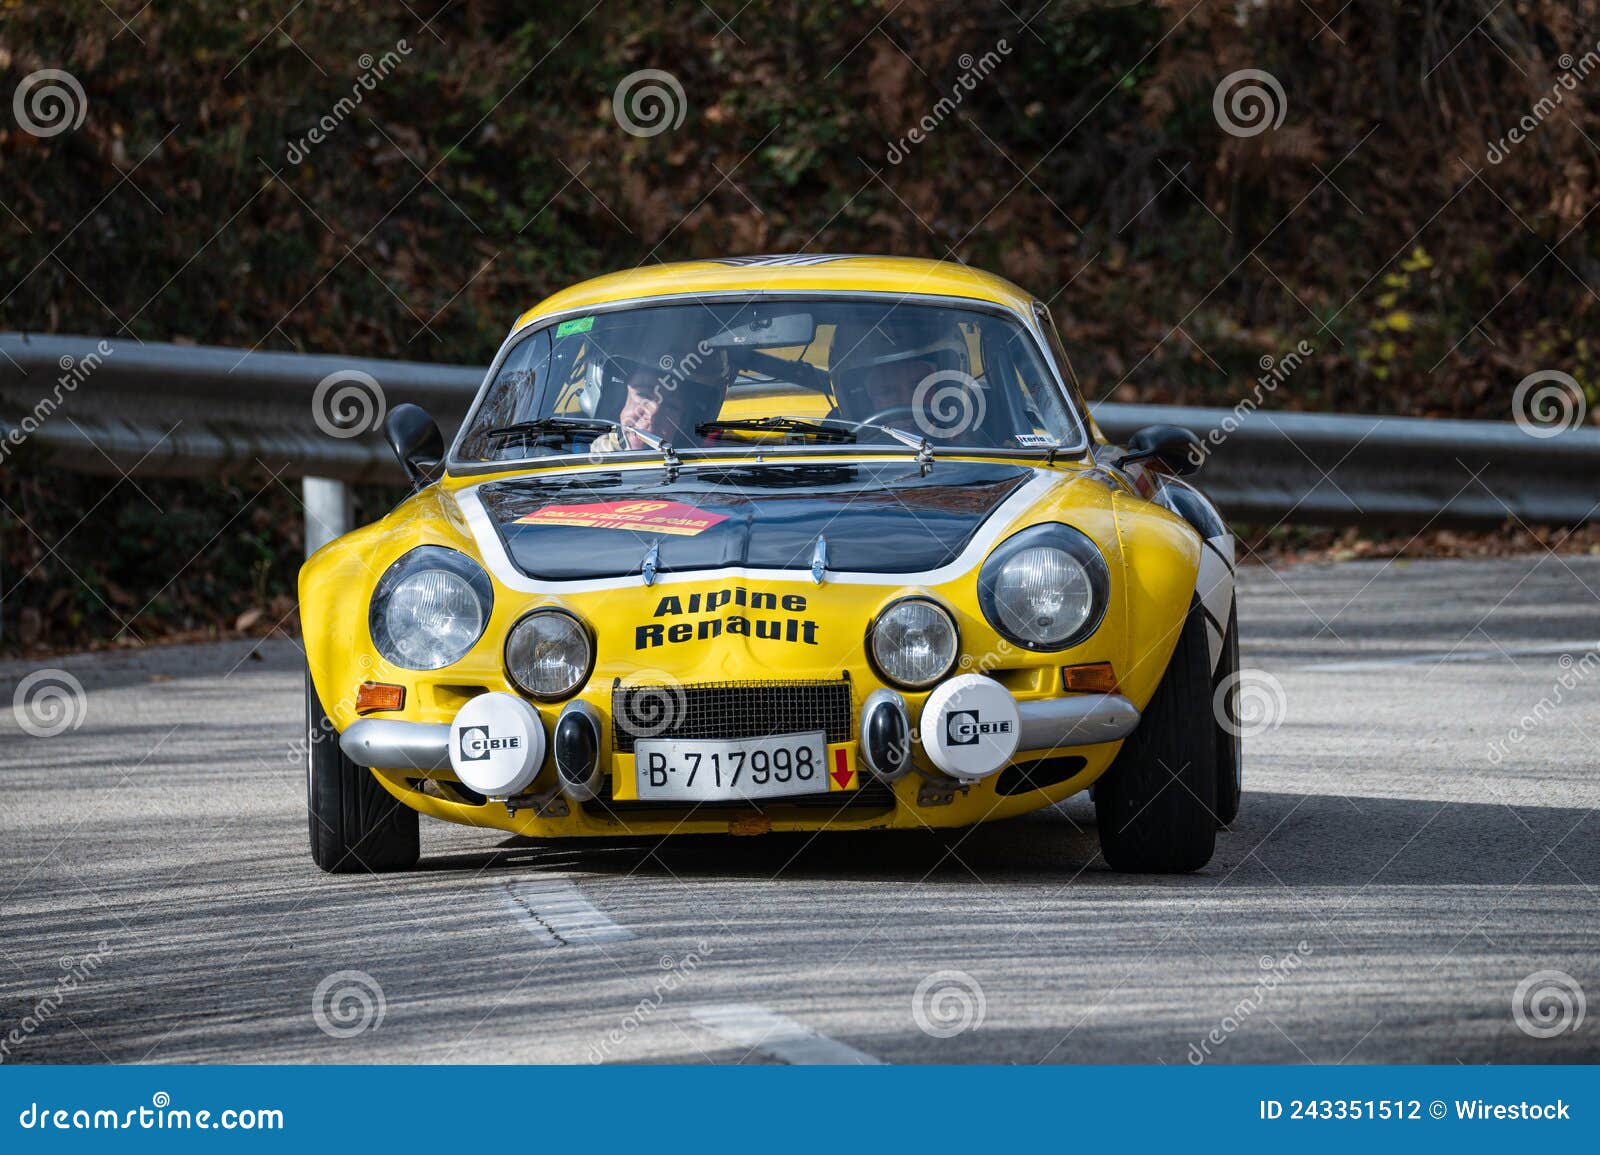 44 photos et images de Alpine Renault A110 - Getty Images